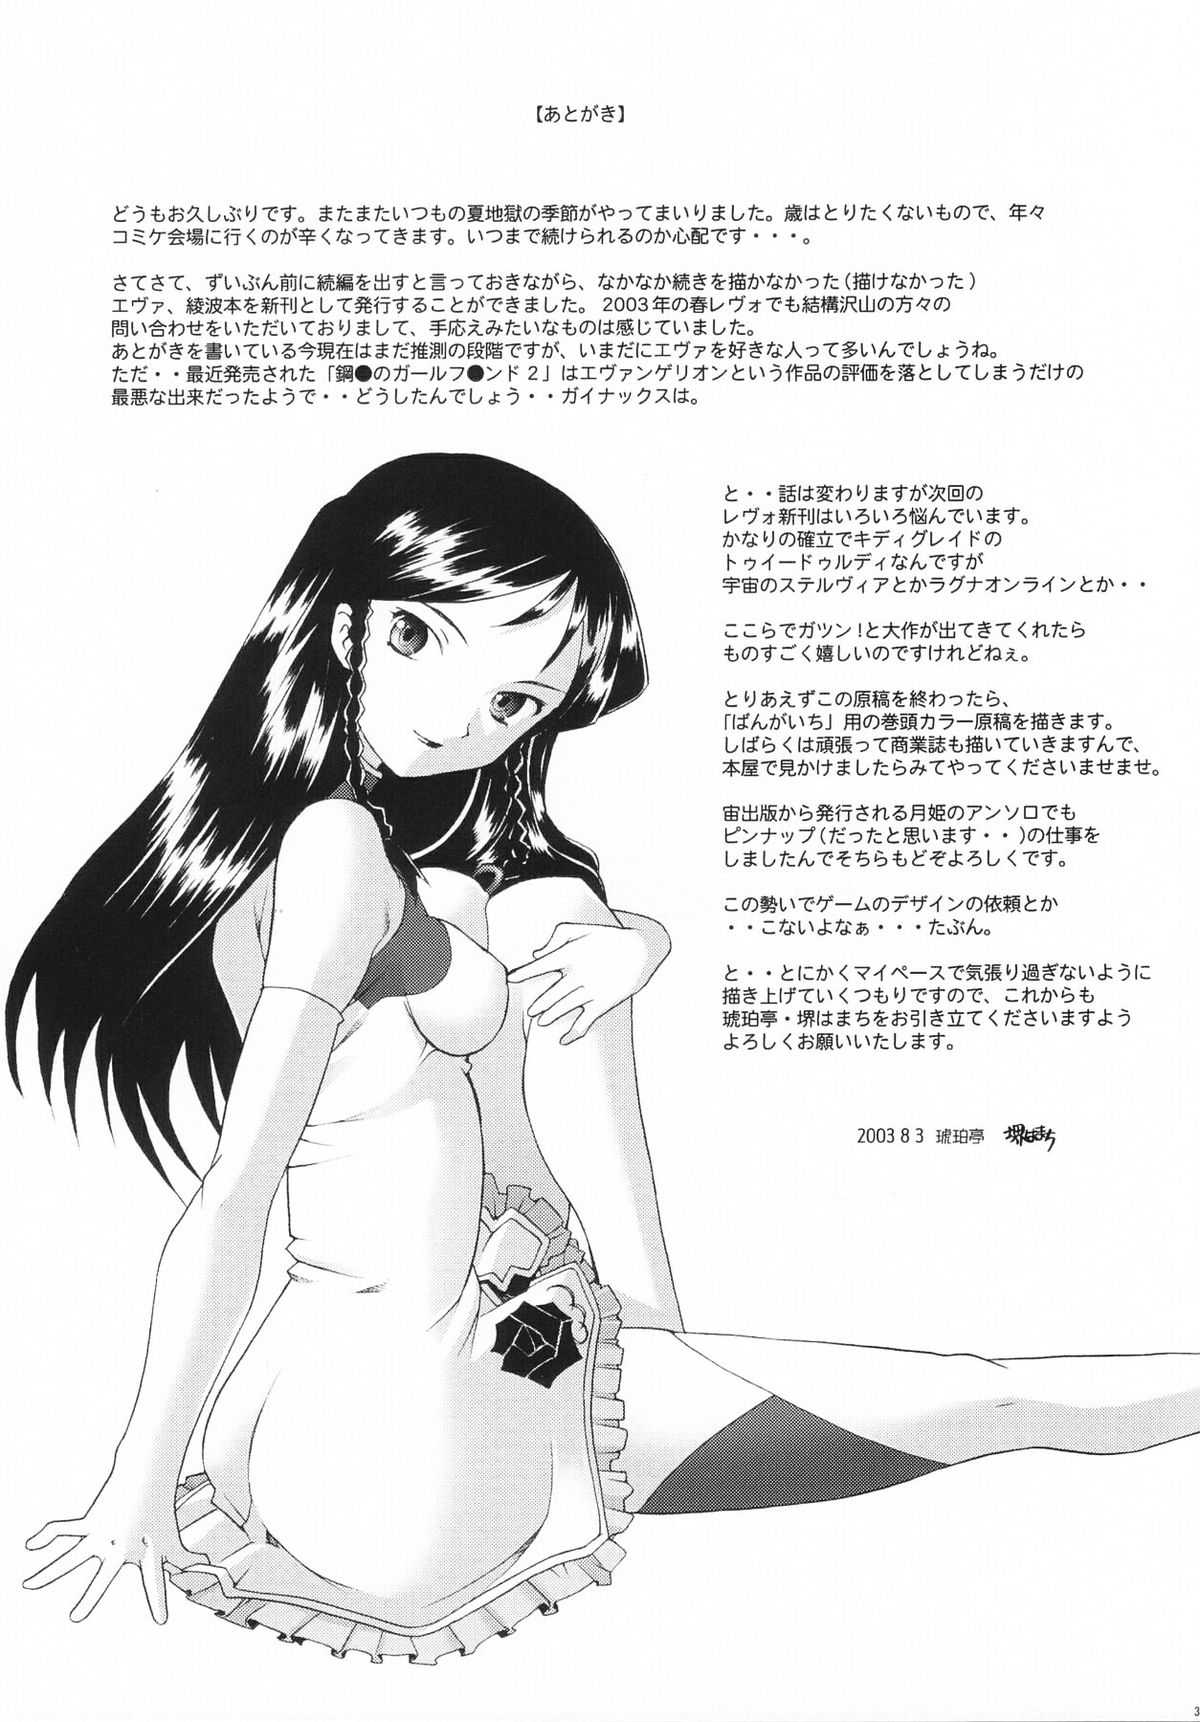 [KOHAKUTEI SAKAI HAMACHI] Eden Rei 3 (English) 